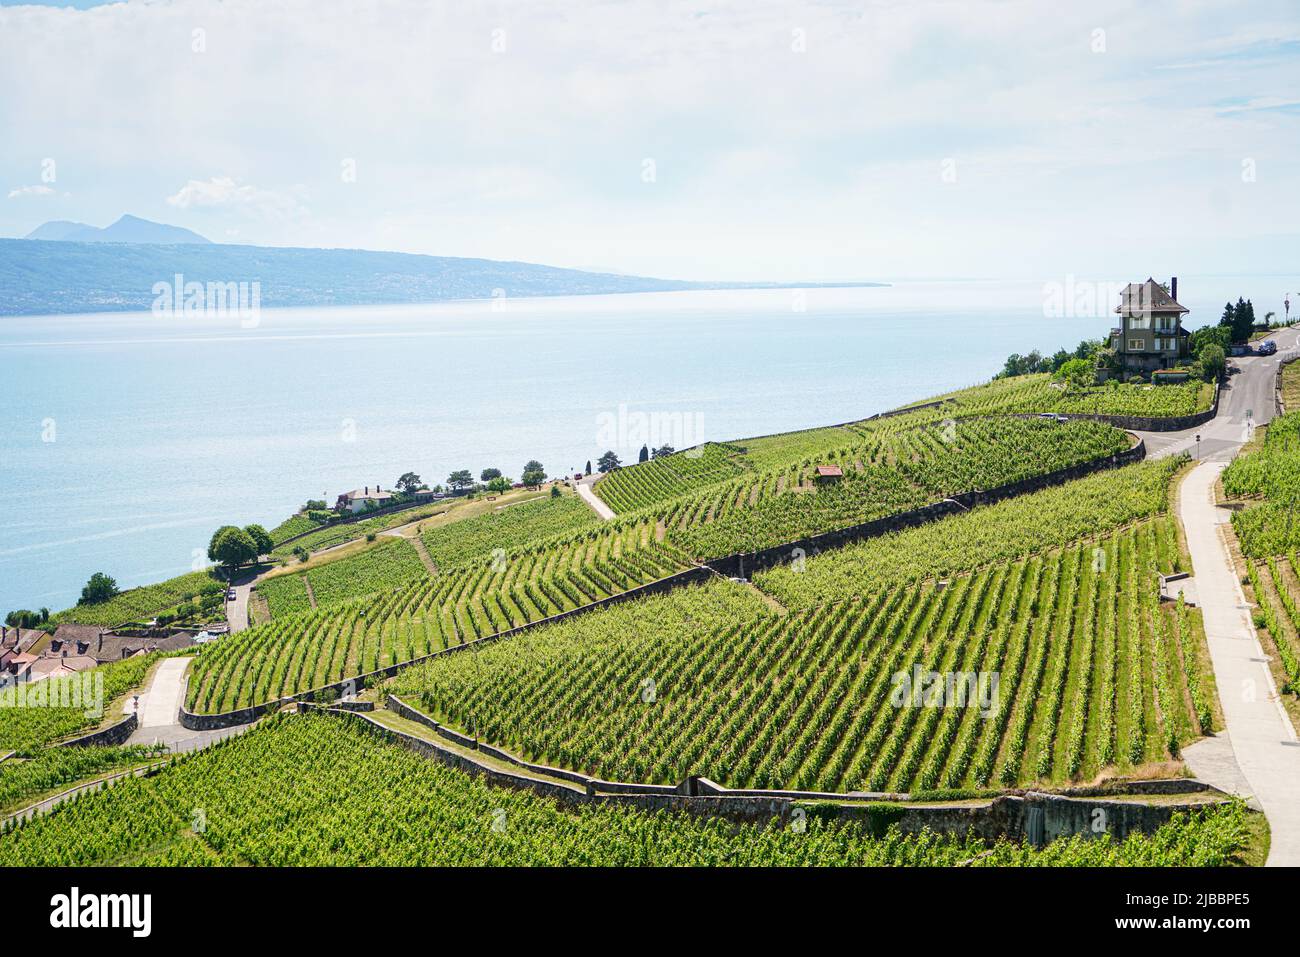 Lavaux, con le sue terrazze coperte di vigneti affacciate sul lago di Ginevra, è una delle regioni viticole più note e affascinanti della Svizzera Foto Stock